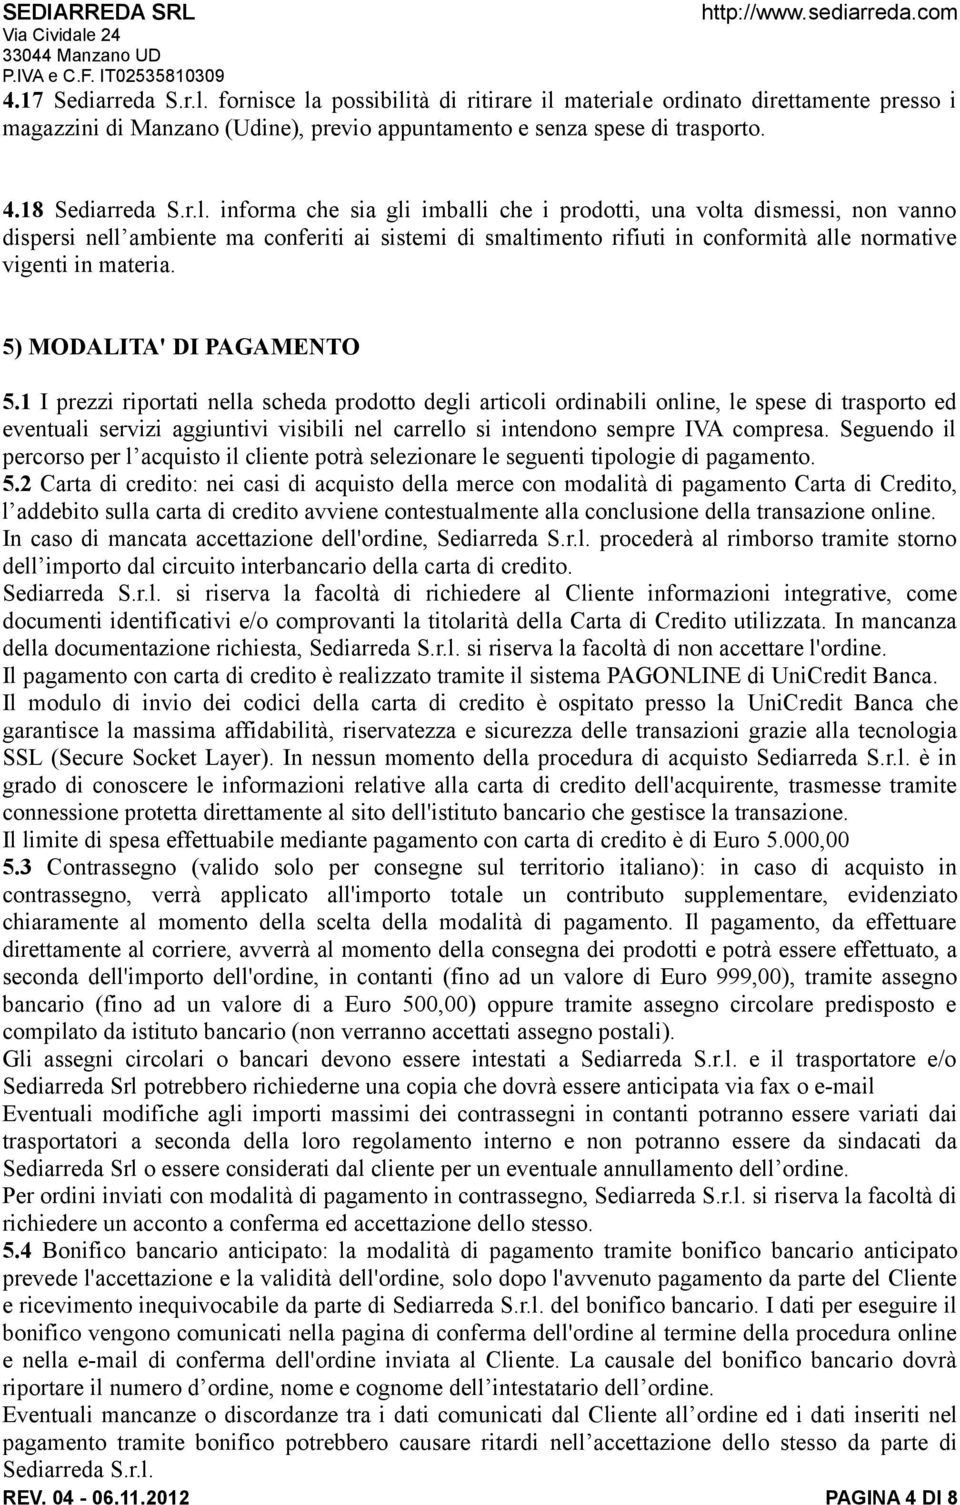 5) MODALITA' DI PAGAMENTO 5.